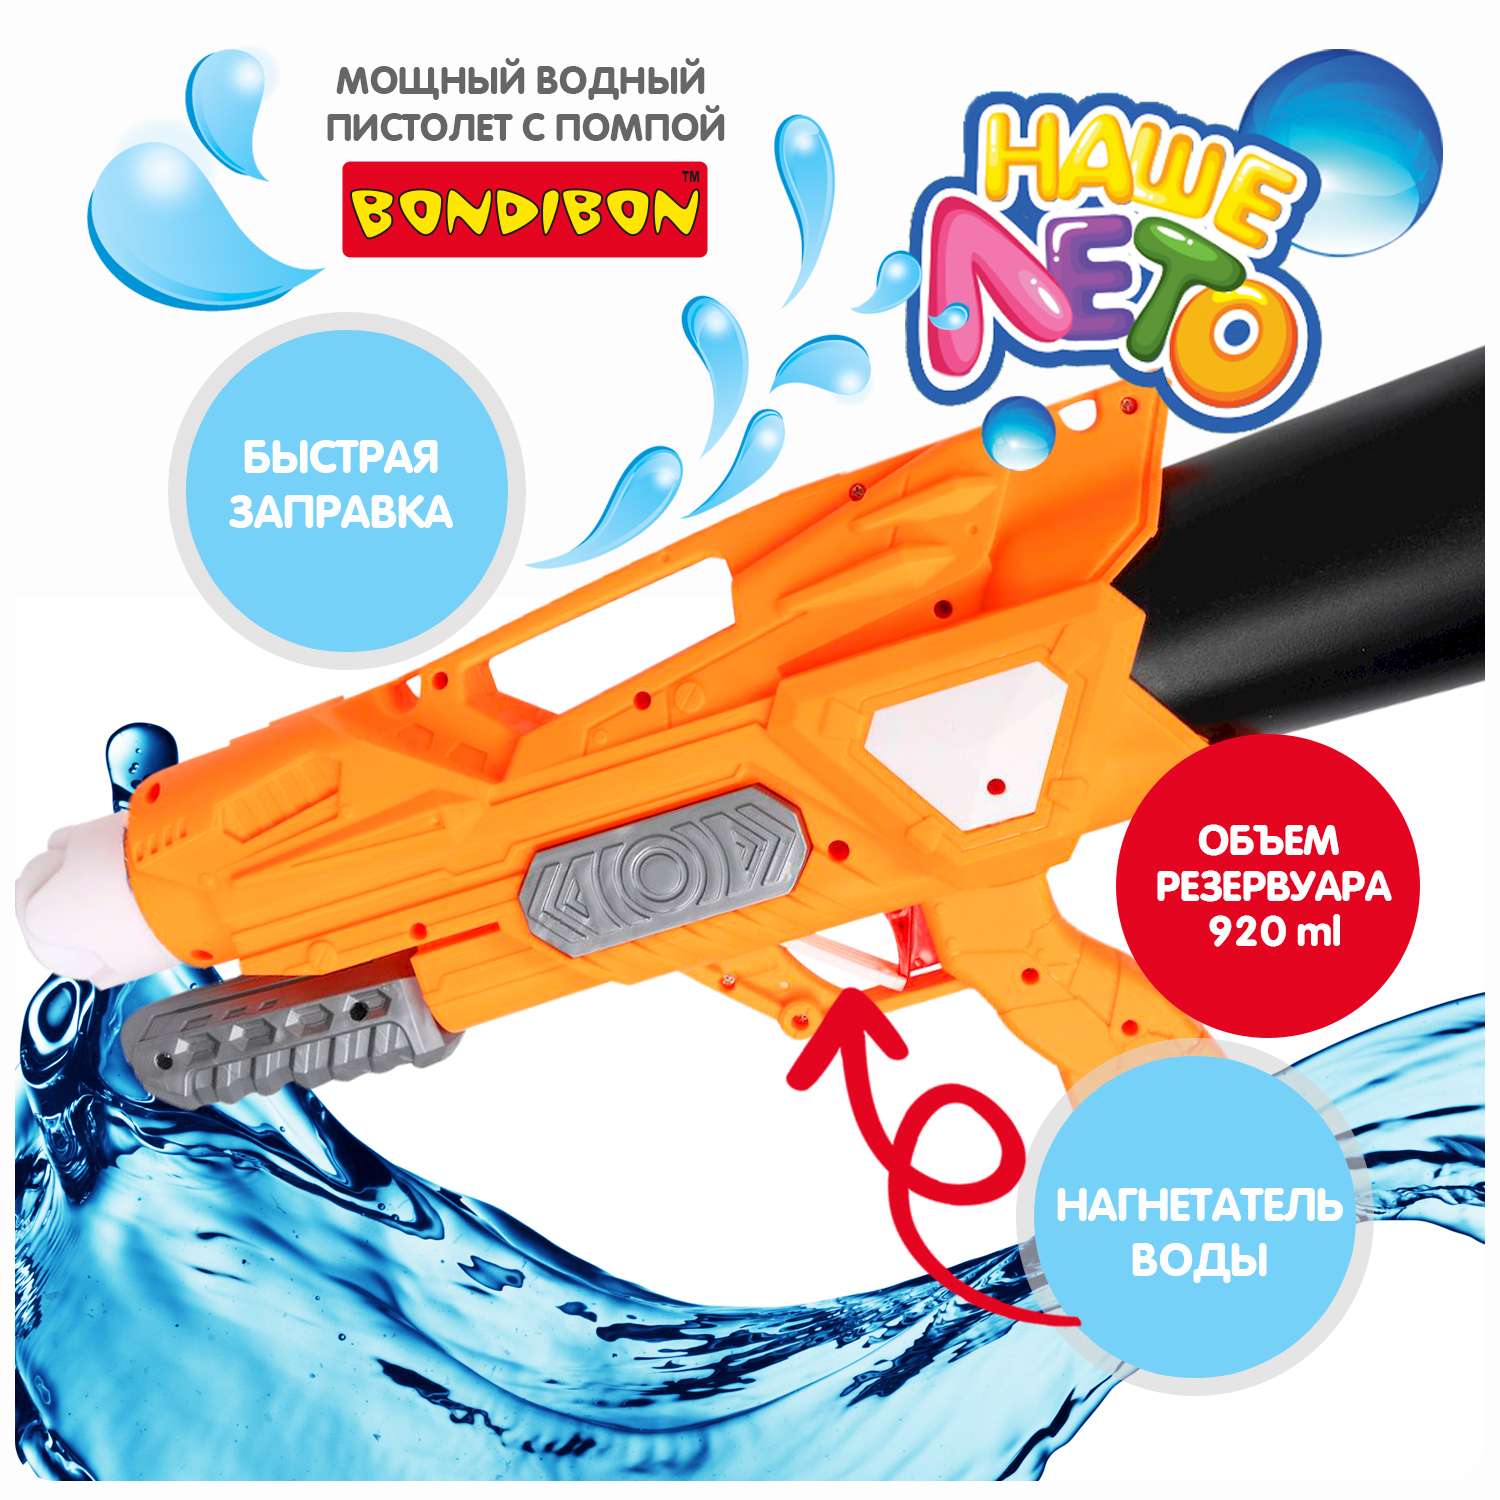 Водный пистолет BONDIBON с помпой оранжевого цвета серия Наше лето - фото 2